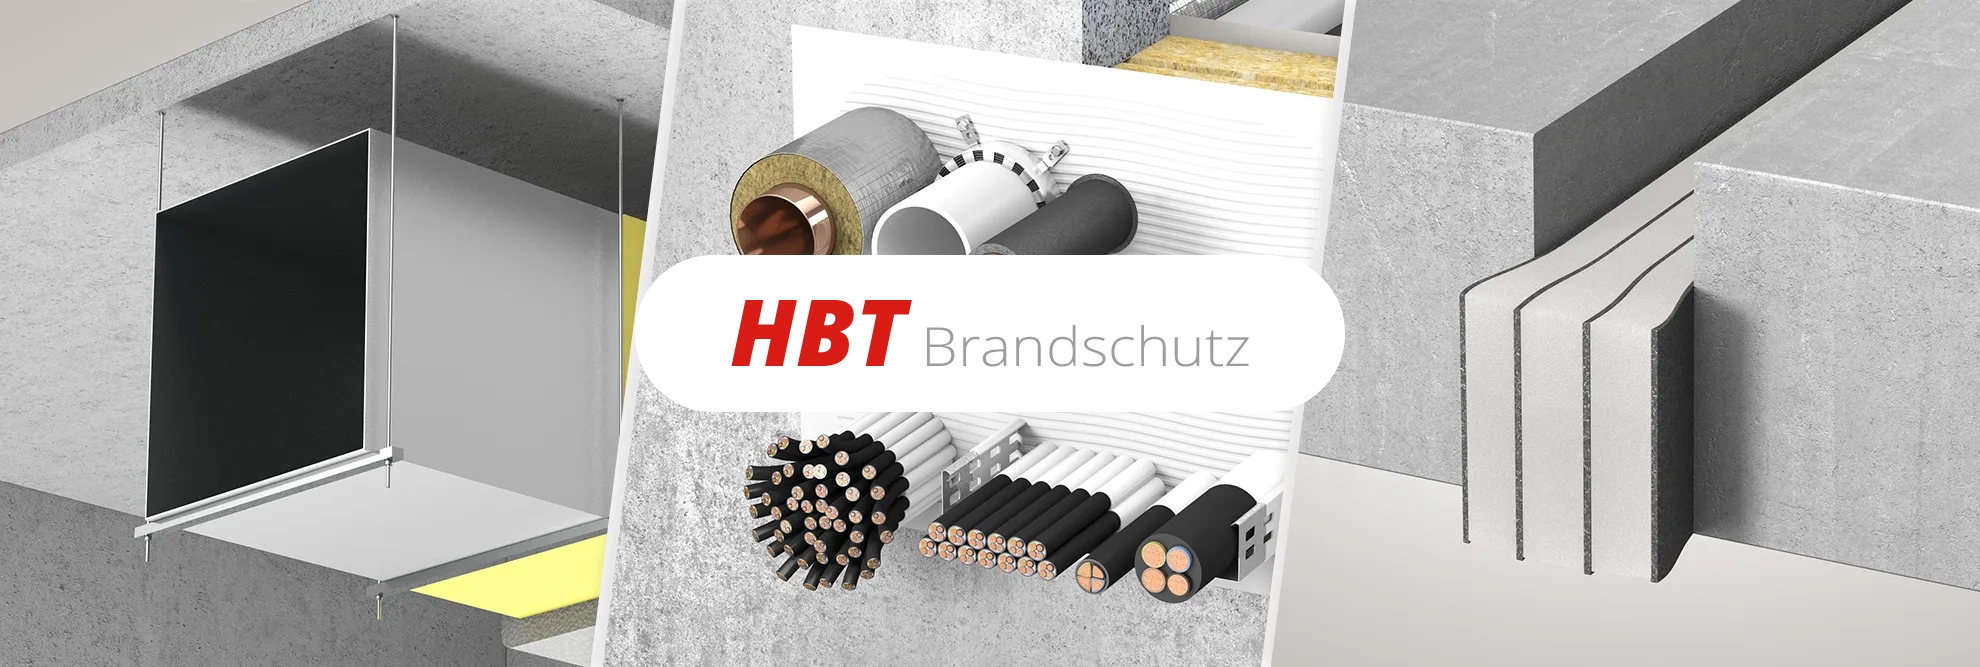 Über uns - HBT Brandschutz GmbH - Ihr Partner für baulichen und vorbeugenden Brandschutz aus Hessen